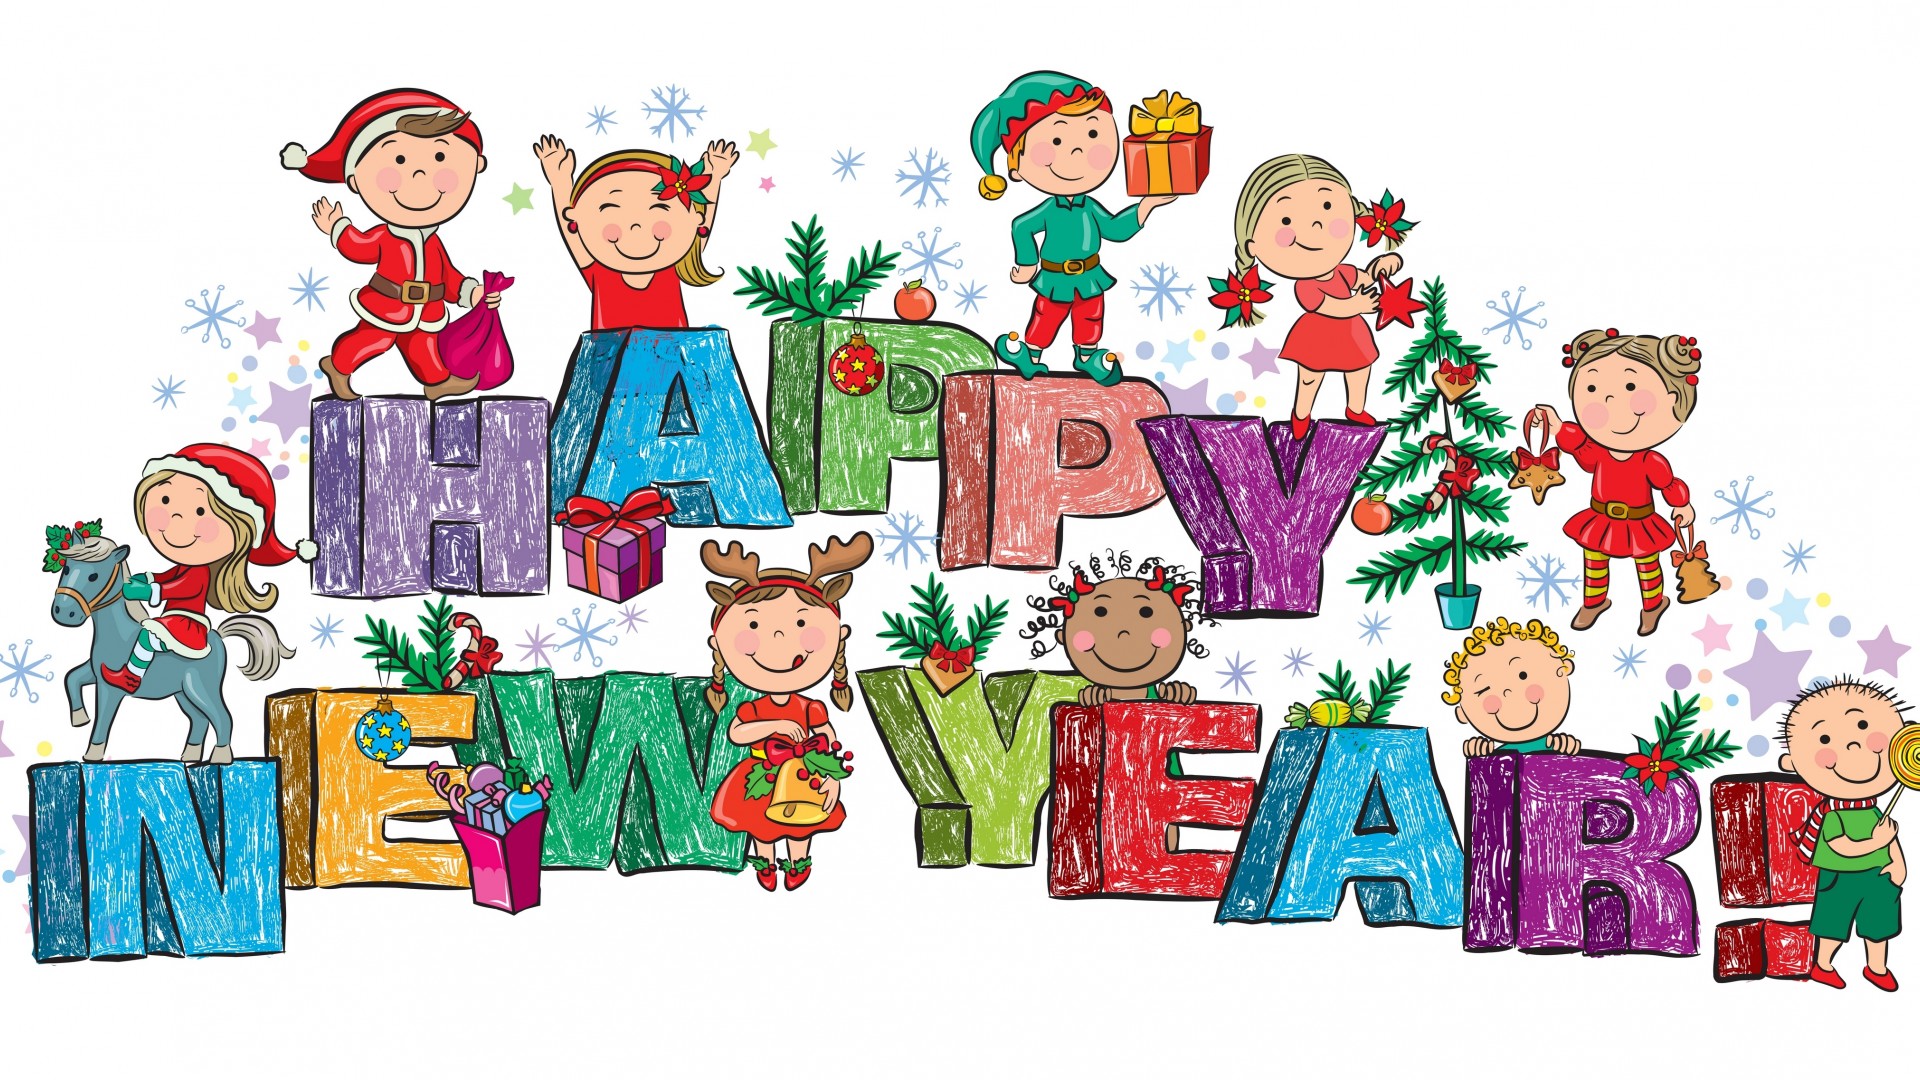 新年快乐,儿童,玩具,礼品,圣诞树,圣诞节快乐,可爱桌面壁纸